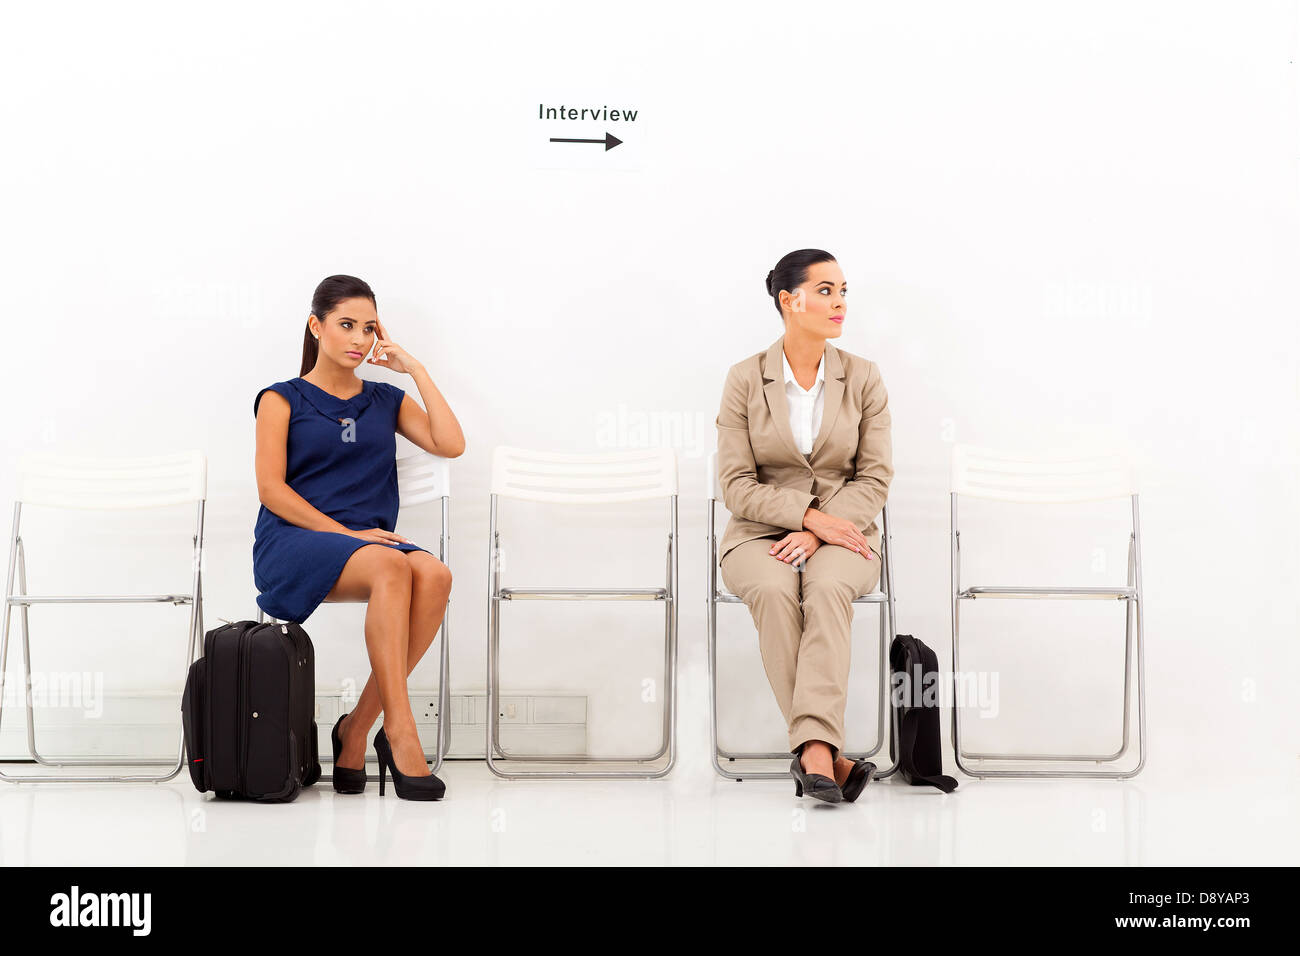 Deux belles femmes candidates en attente d'entrevue d'emploi Banque D'Images